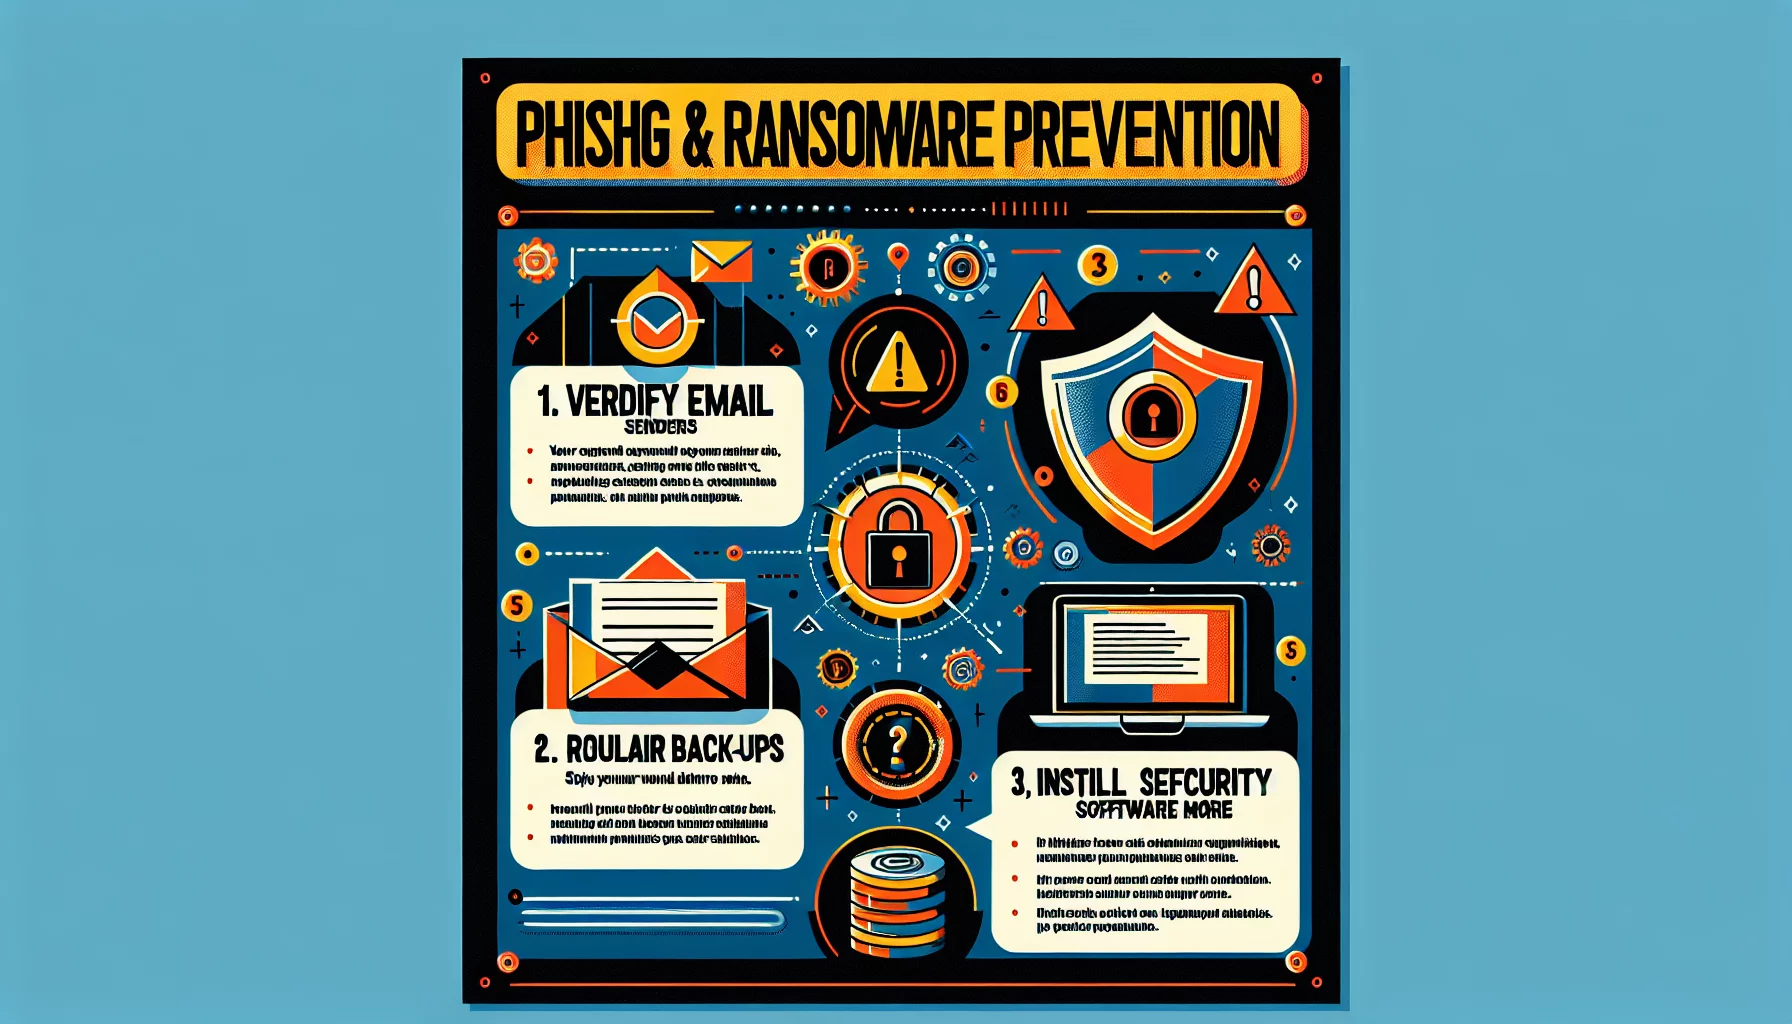 Comment faire pour prévenir les attaques de phishing et de ransomware ?